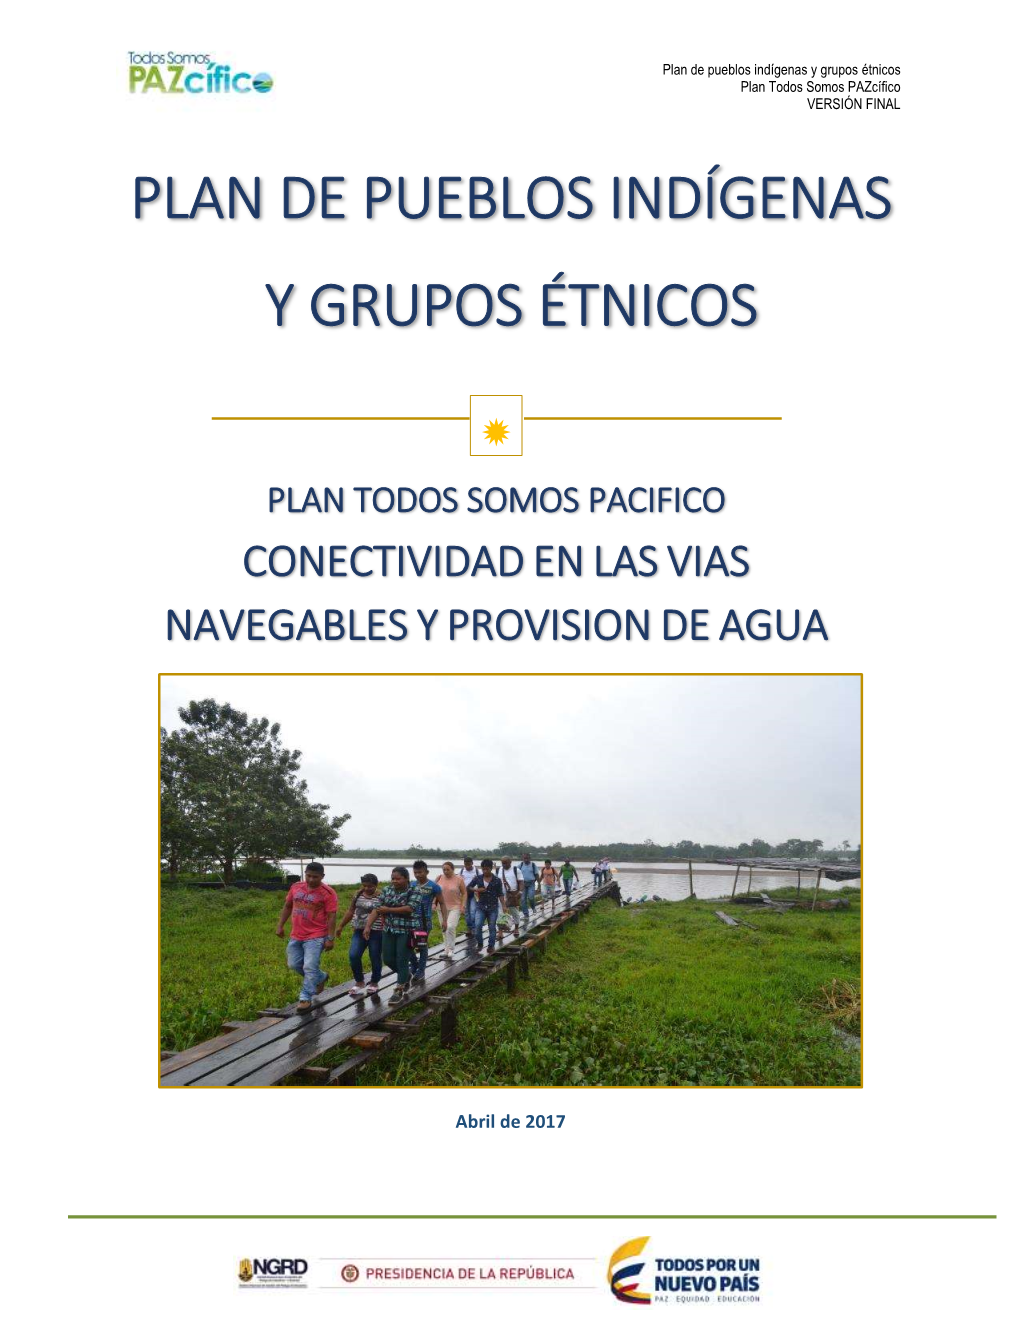 Plan Para Pueblos Indígenas Y Grupos Étnicos